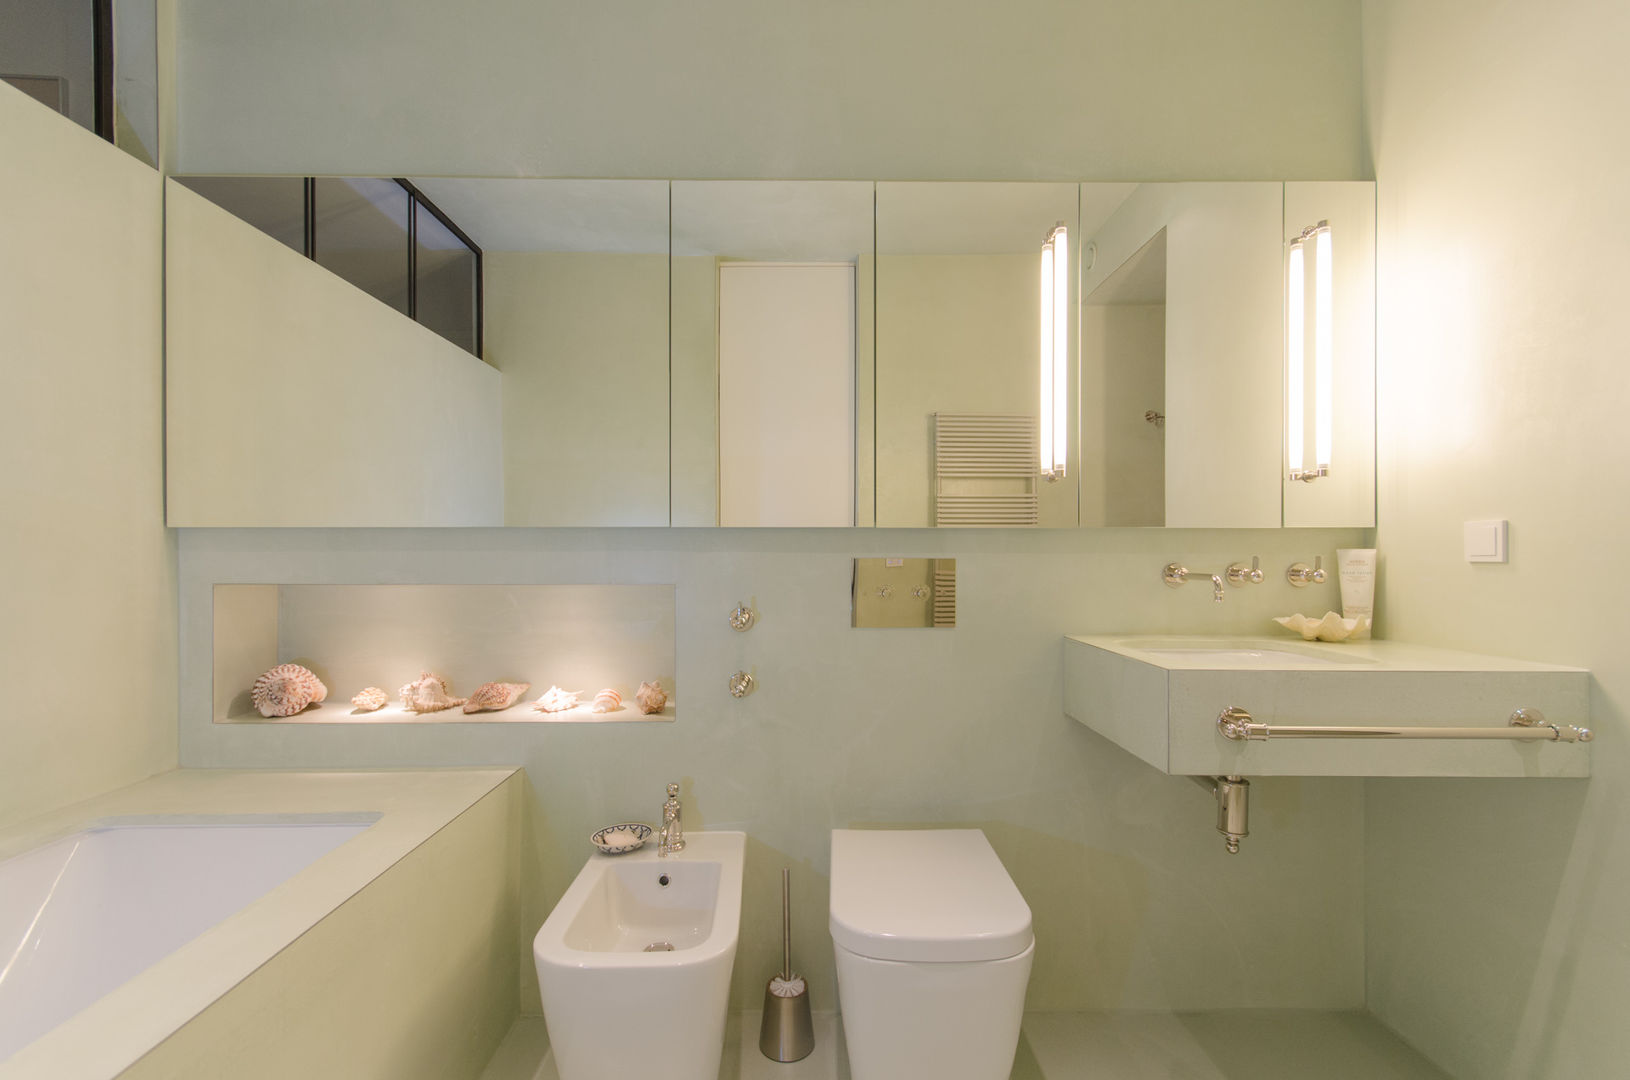 Fresh Mint Aura Vivante حمام bathroom,design,modern,lights,renovation,remodeling,badezimmer